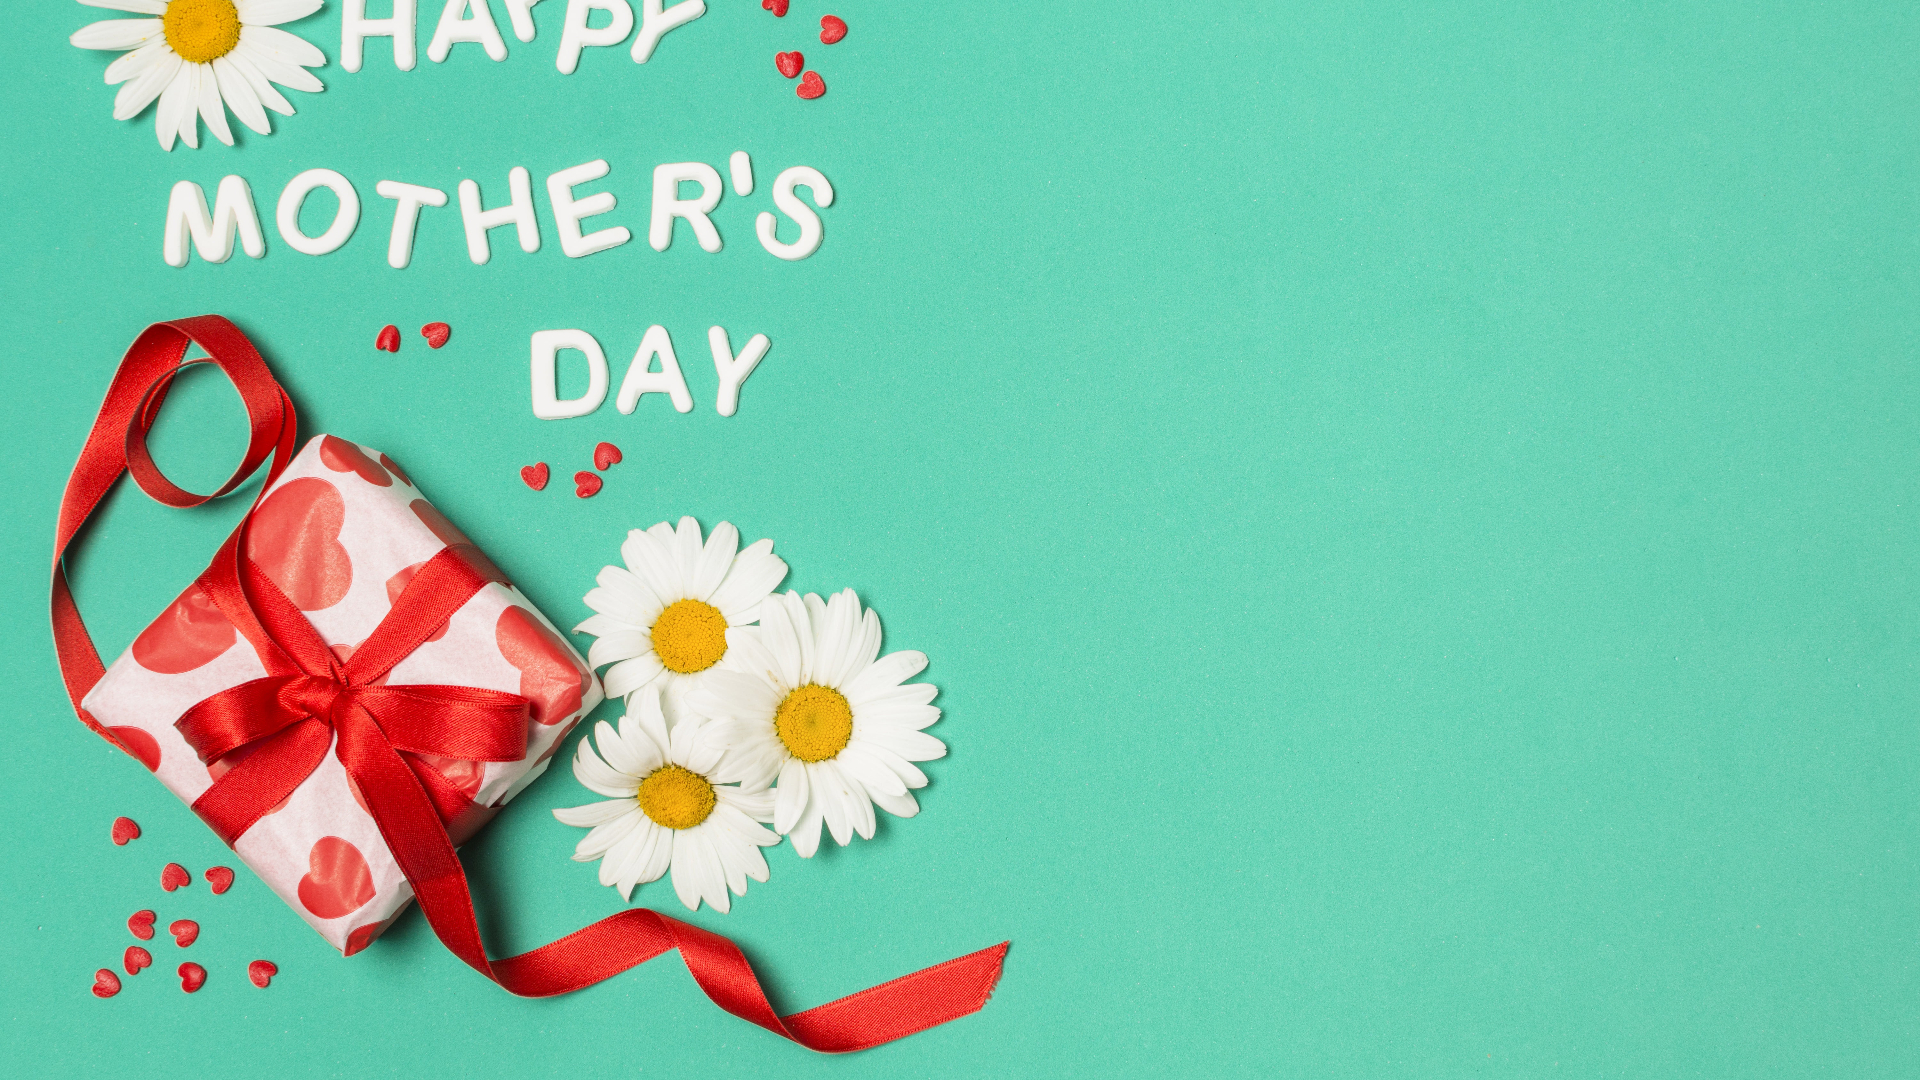 Best Happy Mother's Day Wallpapers • TrumpWallpapers